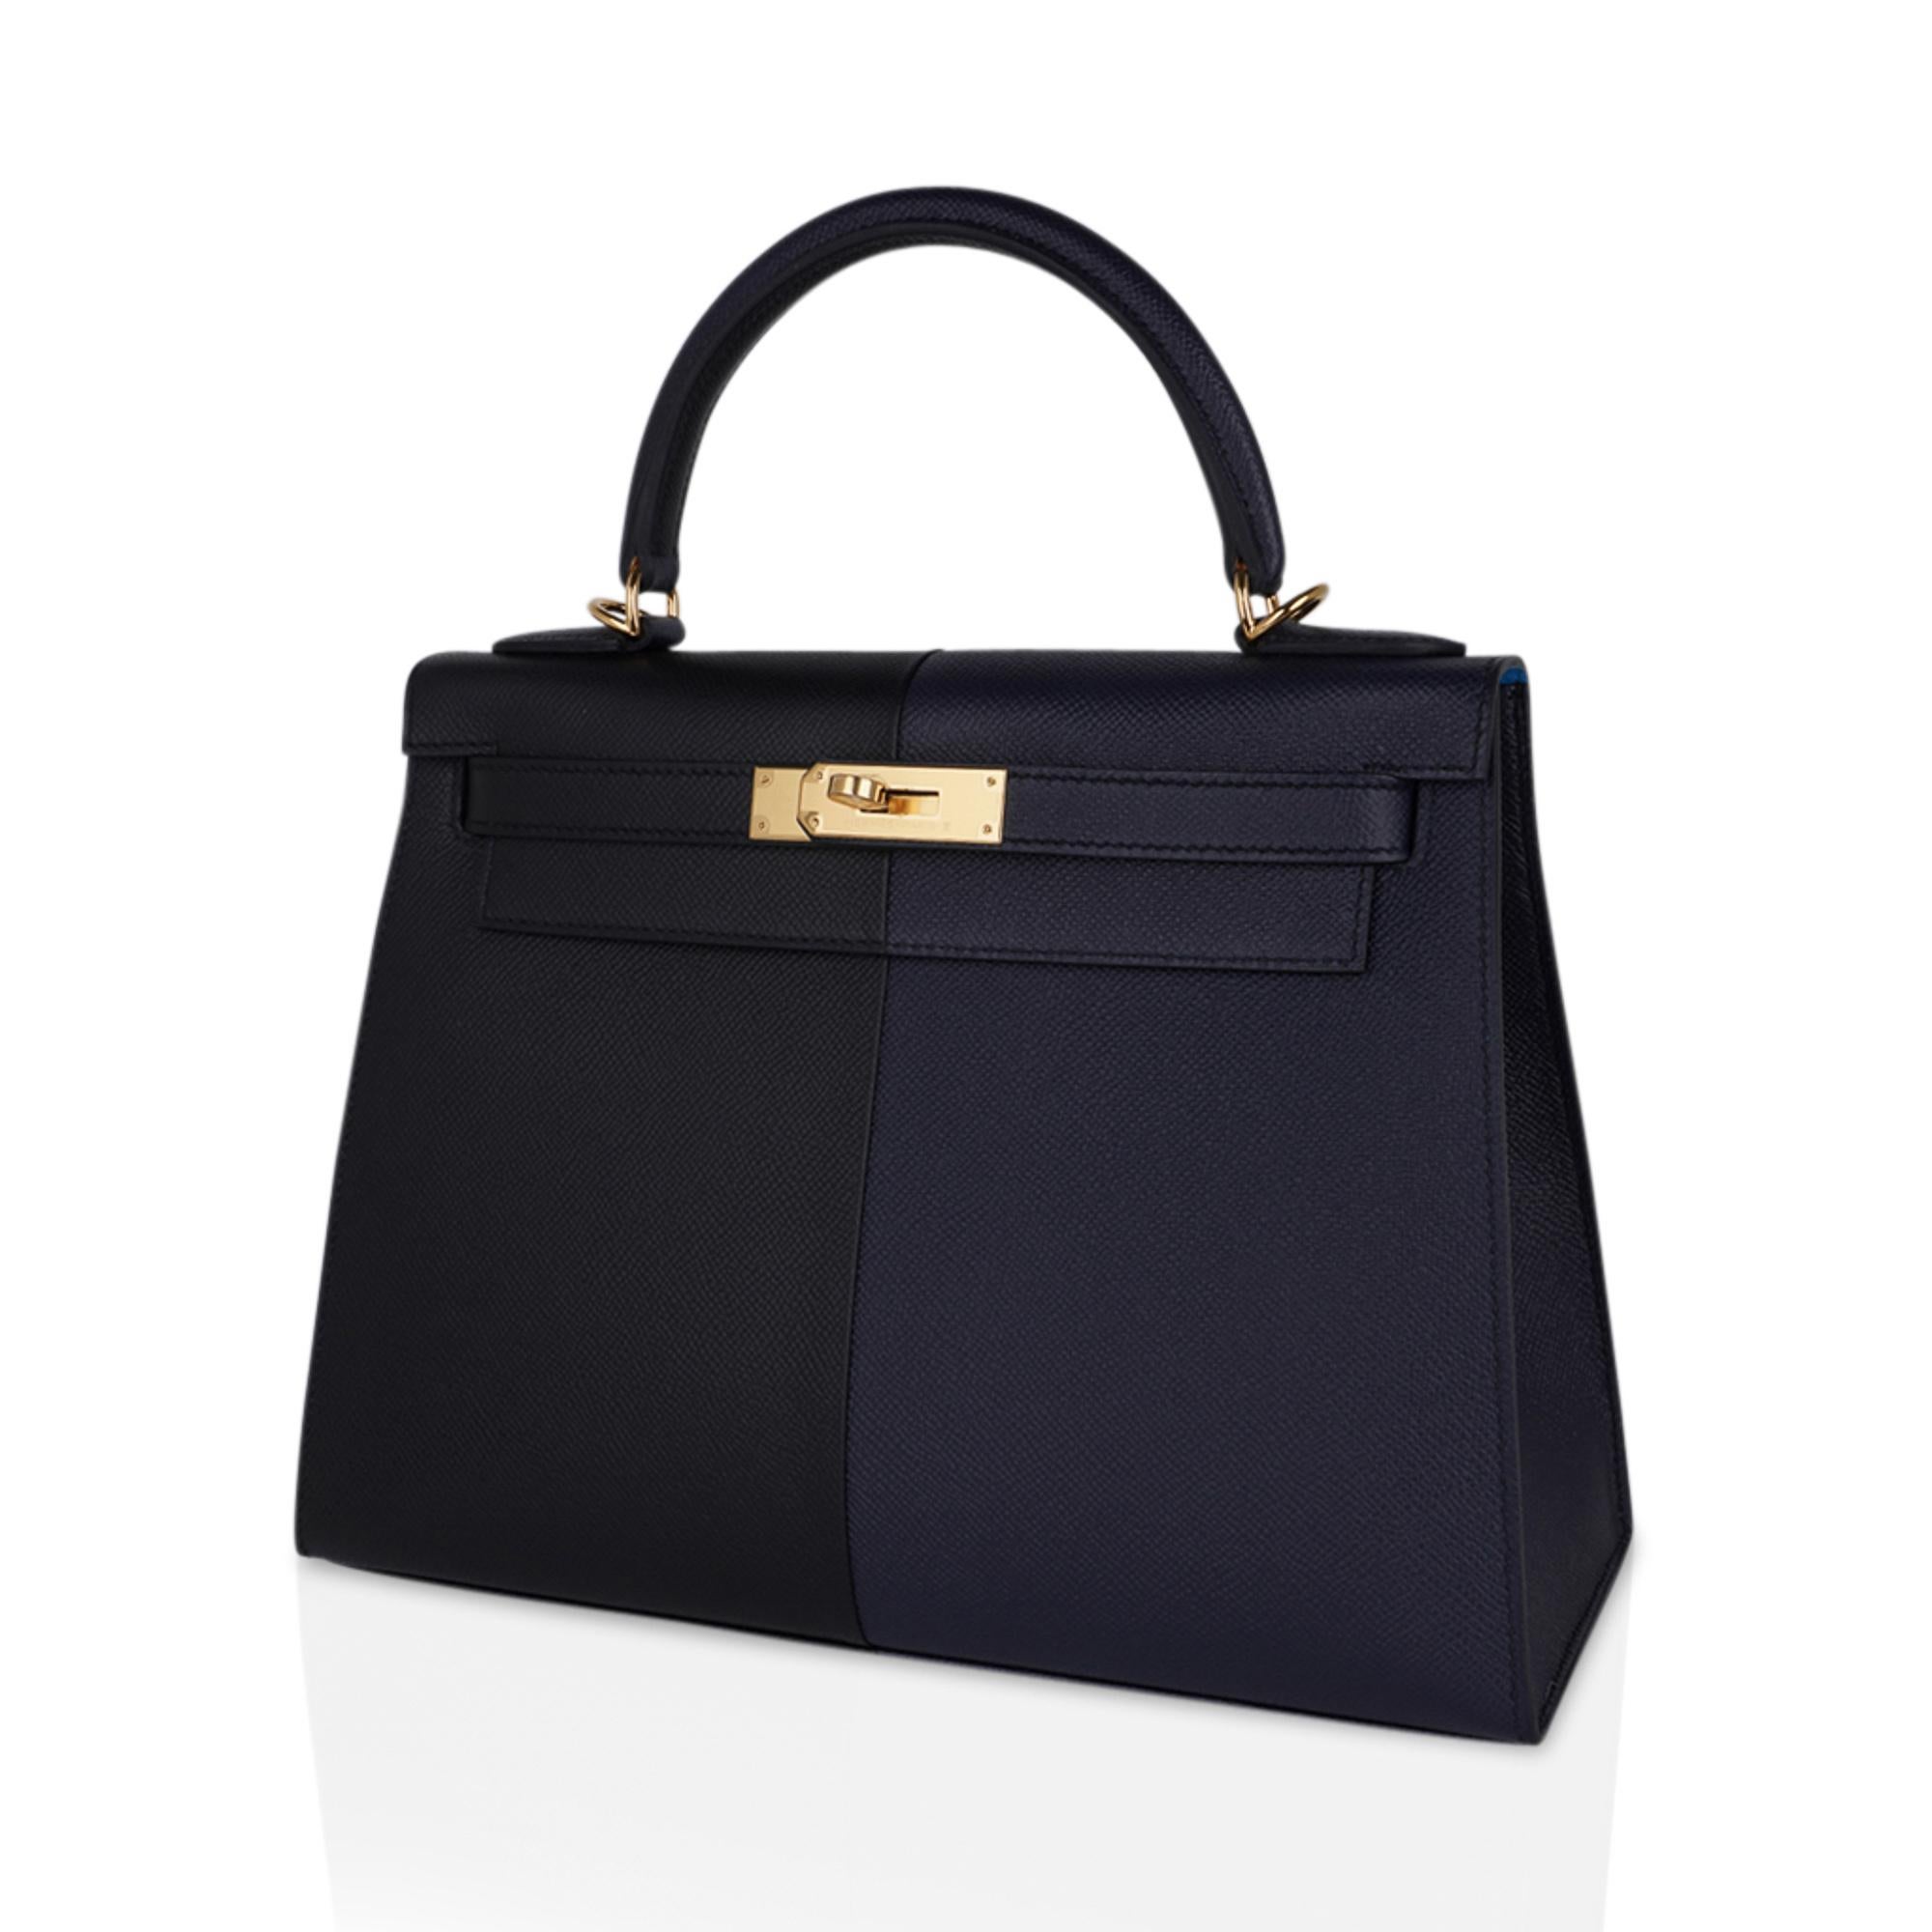 Hermes Kelly Casaque 28 Bag Black / Bleu Indigo Sellier Limited Edition 1